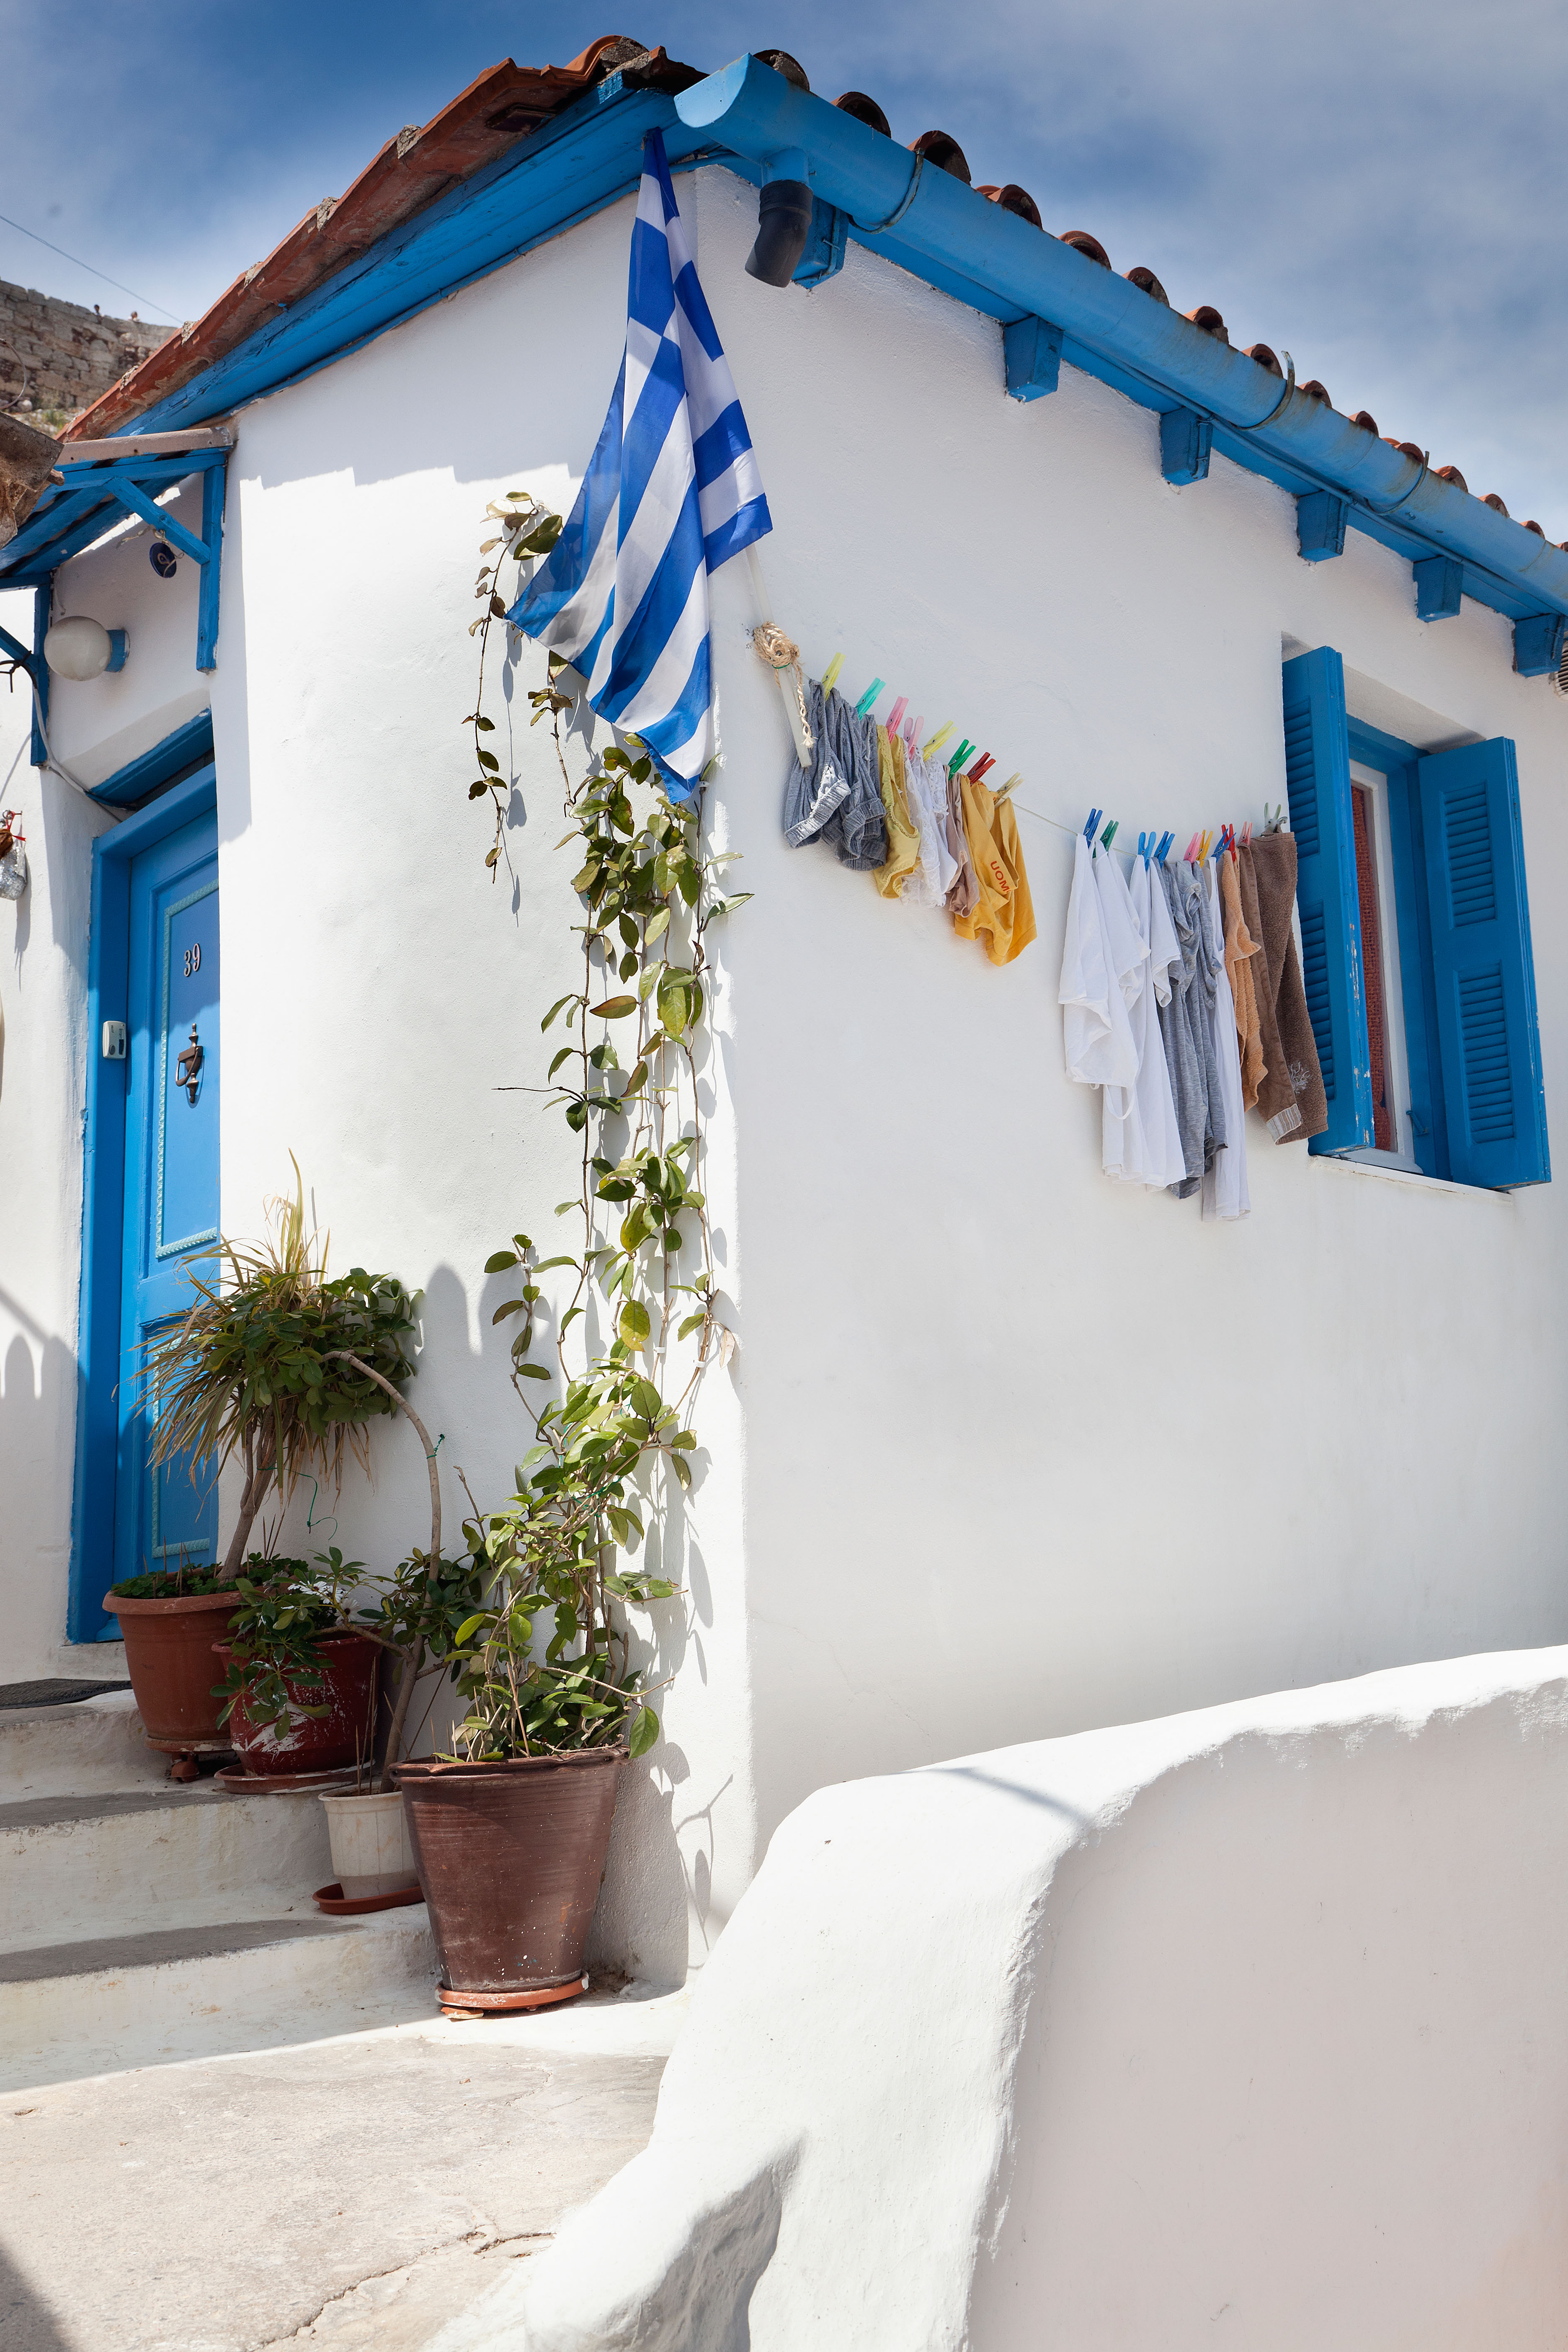 Die Häuser in der Gegend werden von Besuchern mit Santorini verglichen